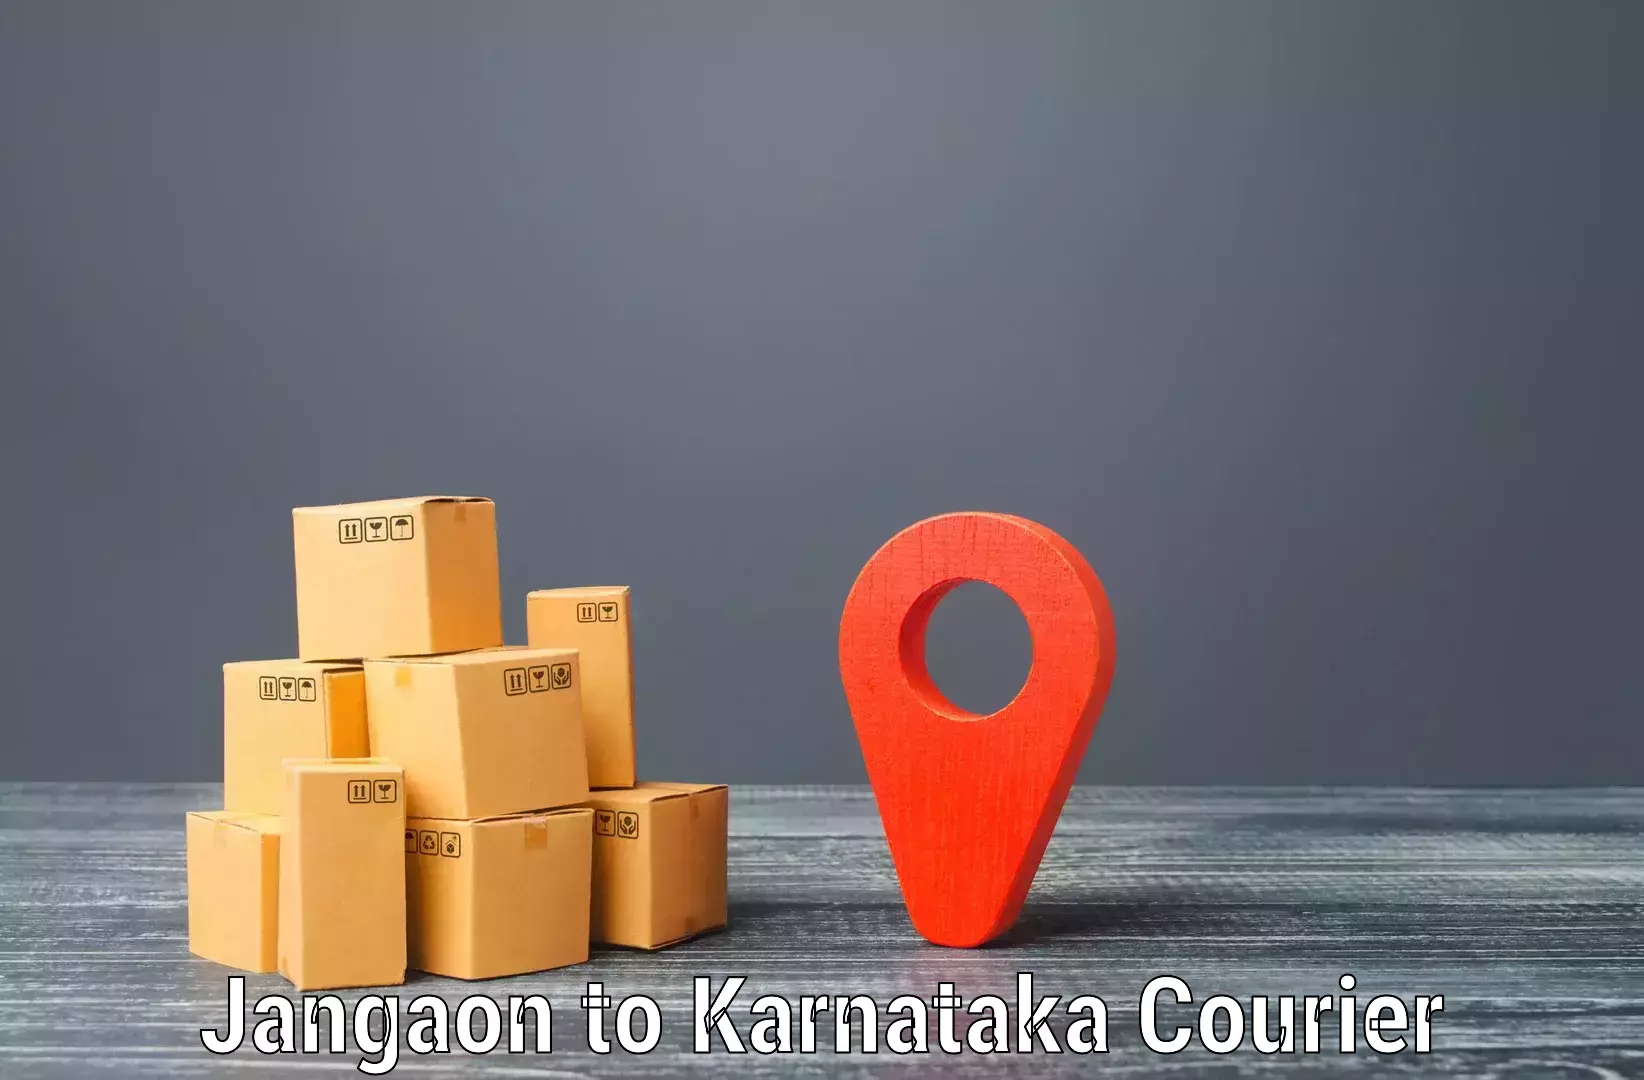 Quality courier services Jangaon to Kalaburagi